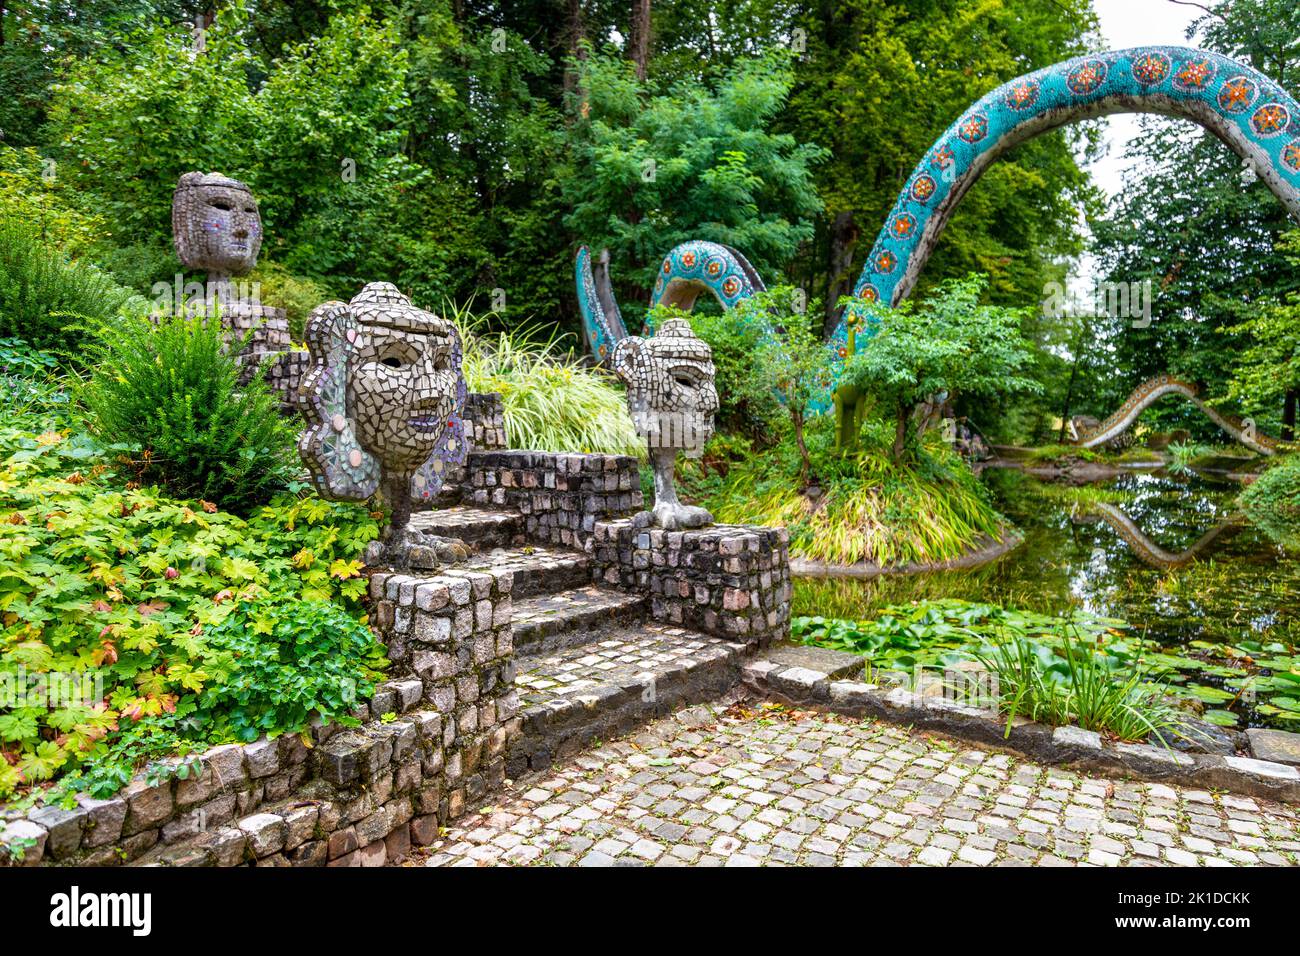 Mosaico esculturas de hormigón que decoran el bosque mágico en el parque Bruno Weber, Dietikon, Suiza Foto de stock